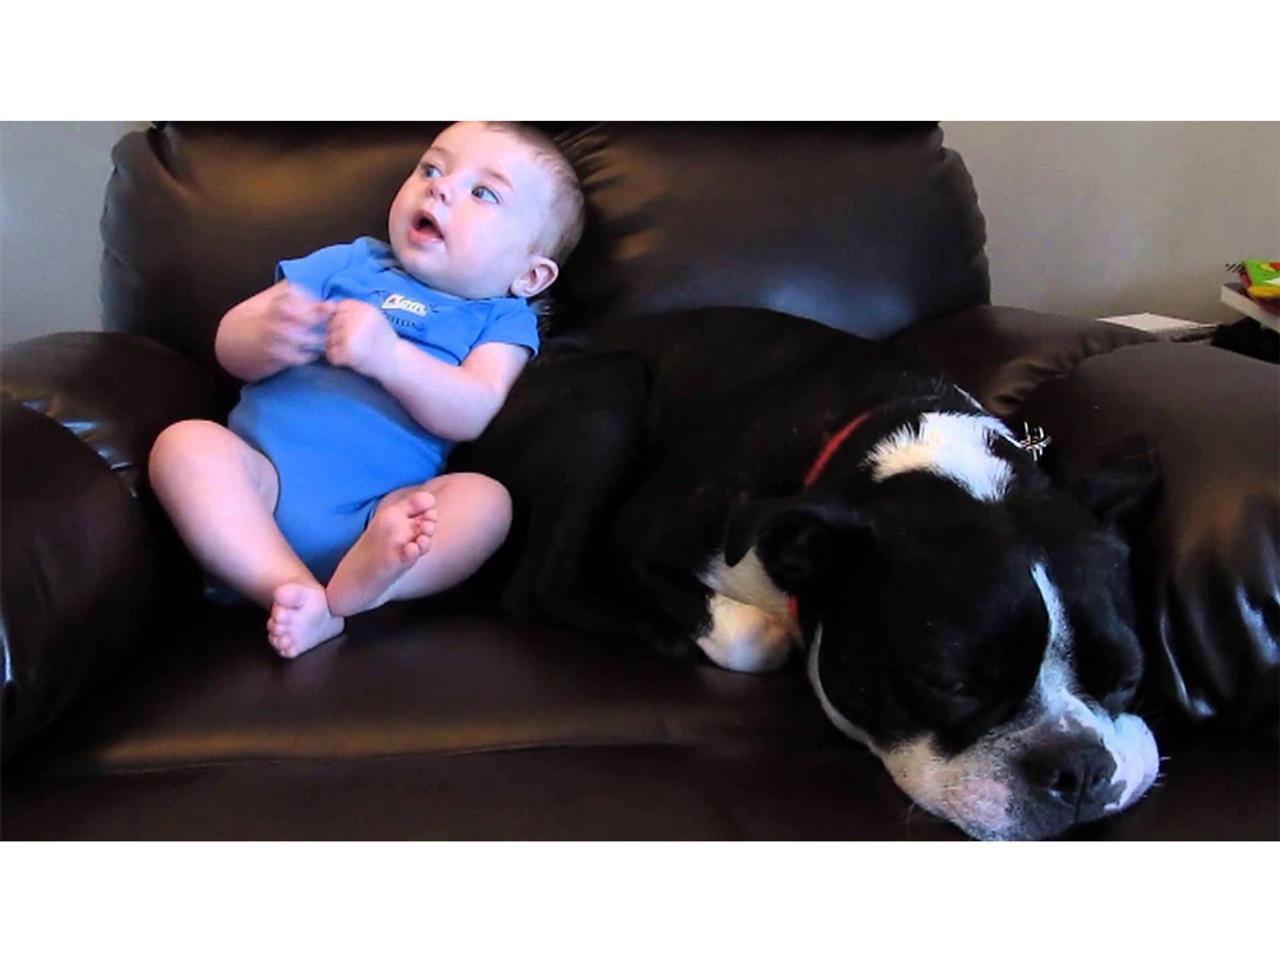 ｢赤ちゃんウンチ犬｣動画スパムに次々とひっかかる政治家・知識人の皆さん